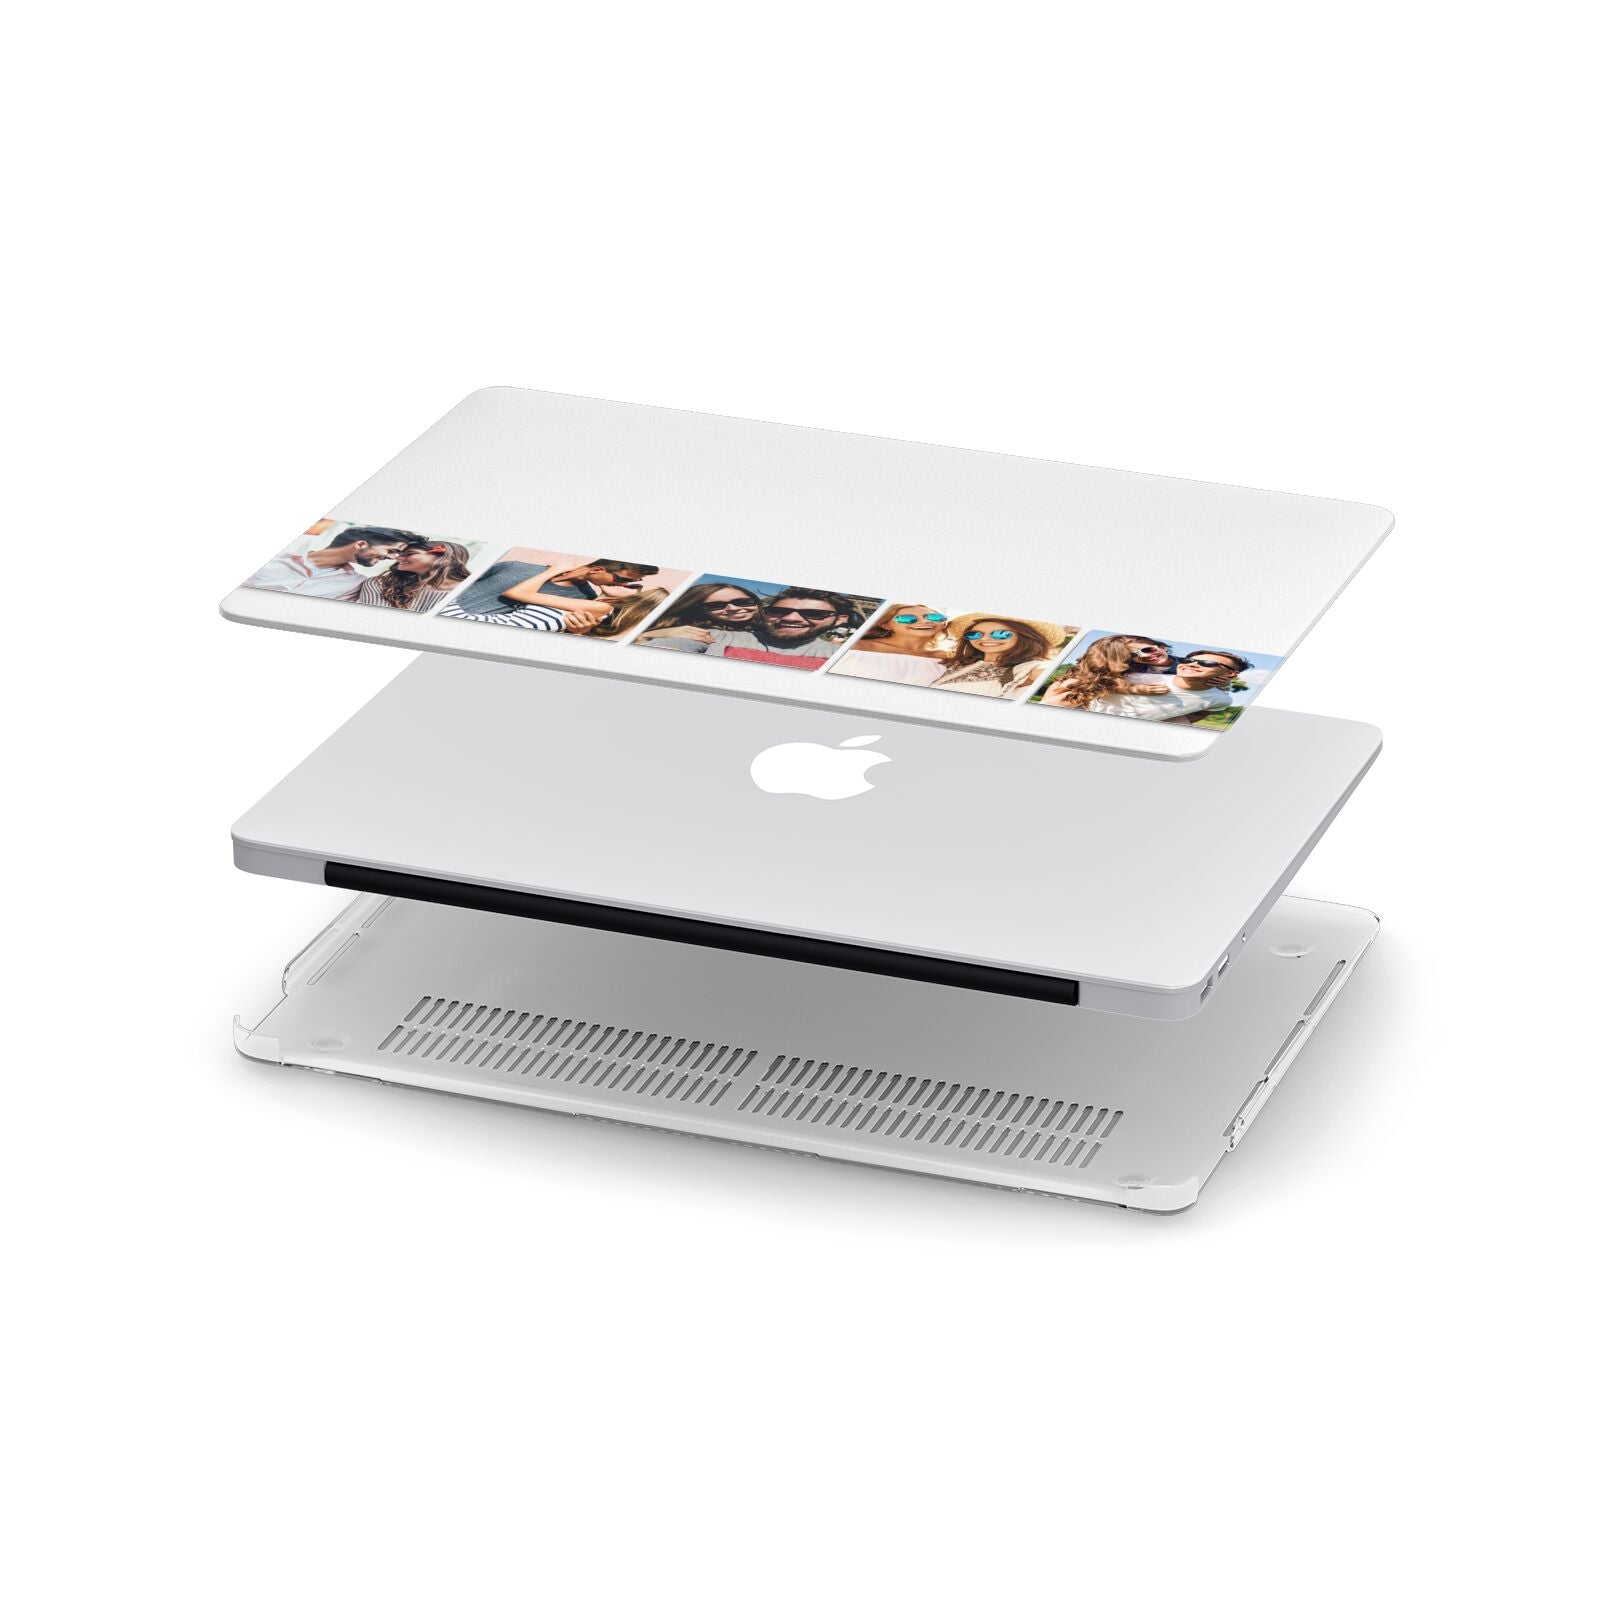 Photo Strip Montage Upload Apple MacBook Case in Detail